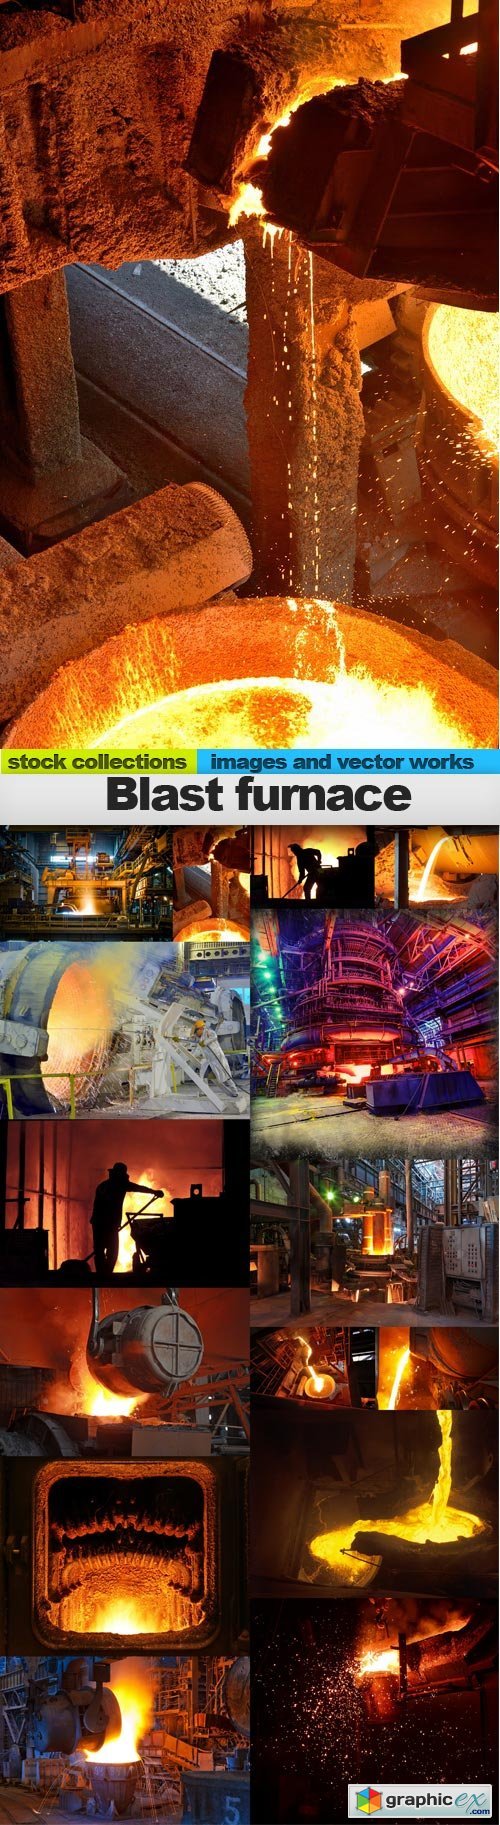 Blast furnace, 15 x UHQ JPEG